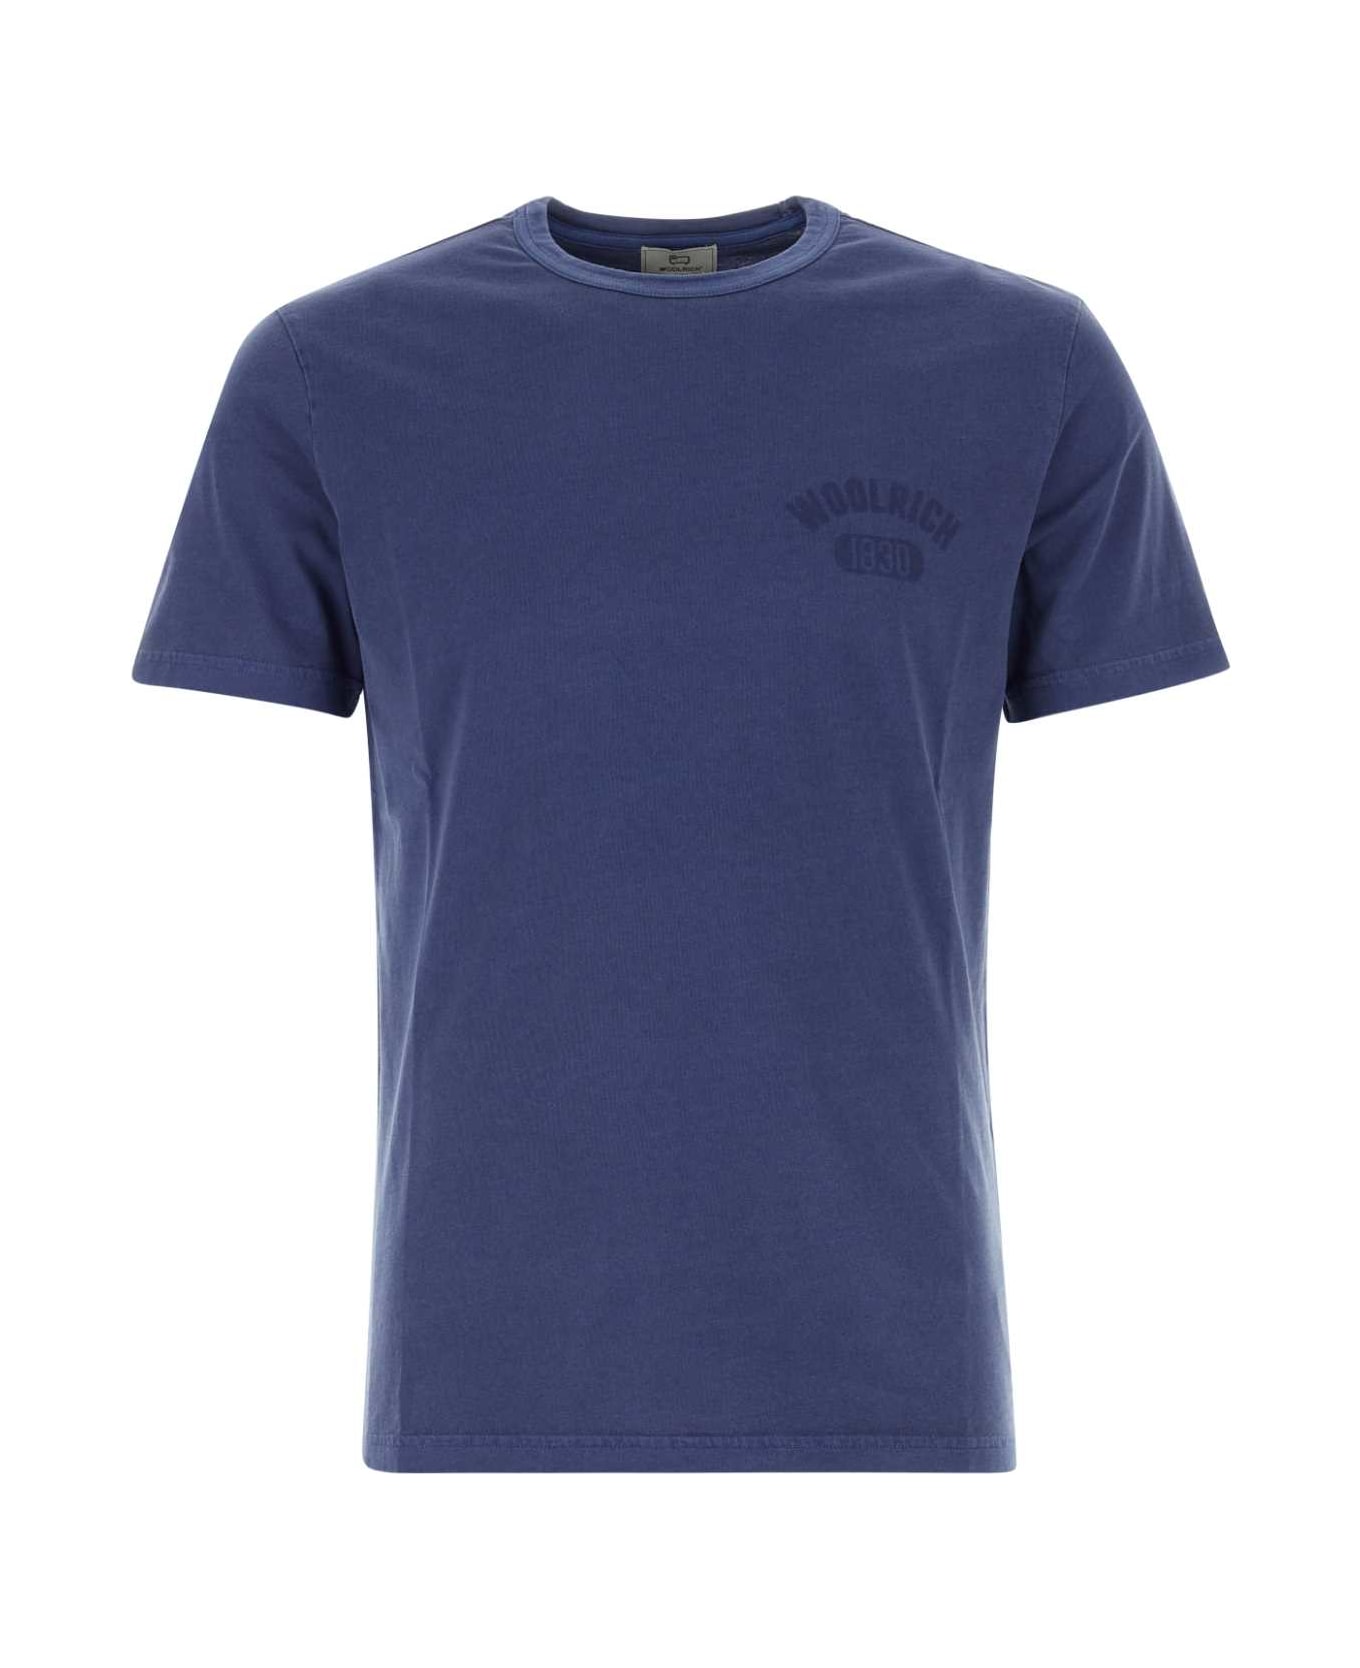 Woolrich Blue Cotton T-shirt - 31108 シャツ